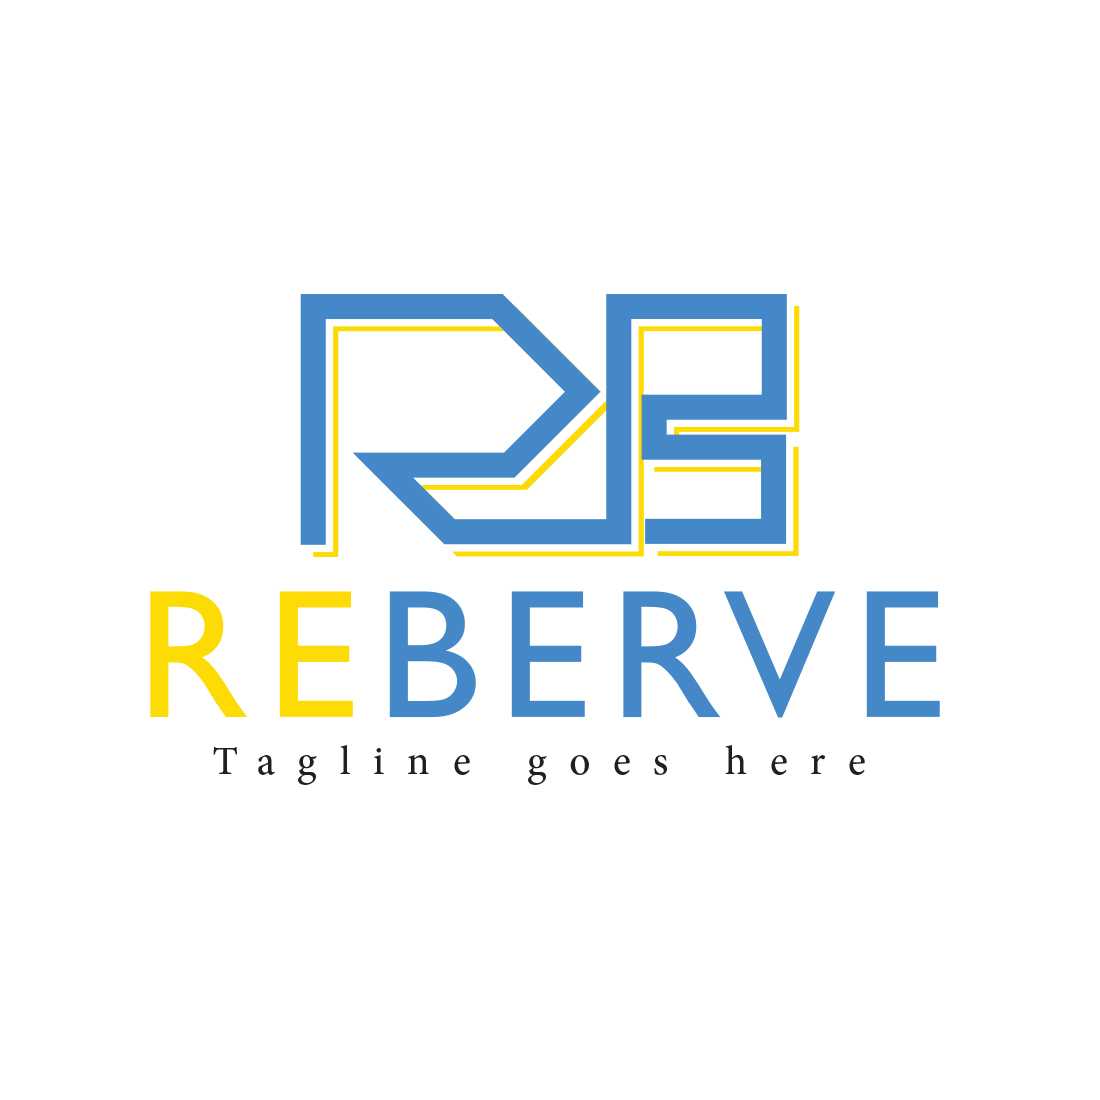 Wordmark ( RB ) logo design preview image.